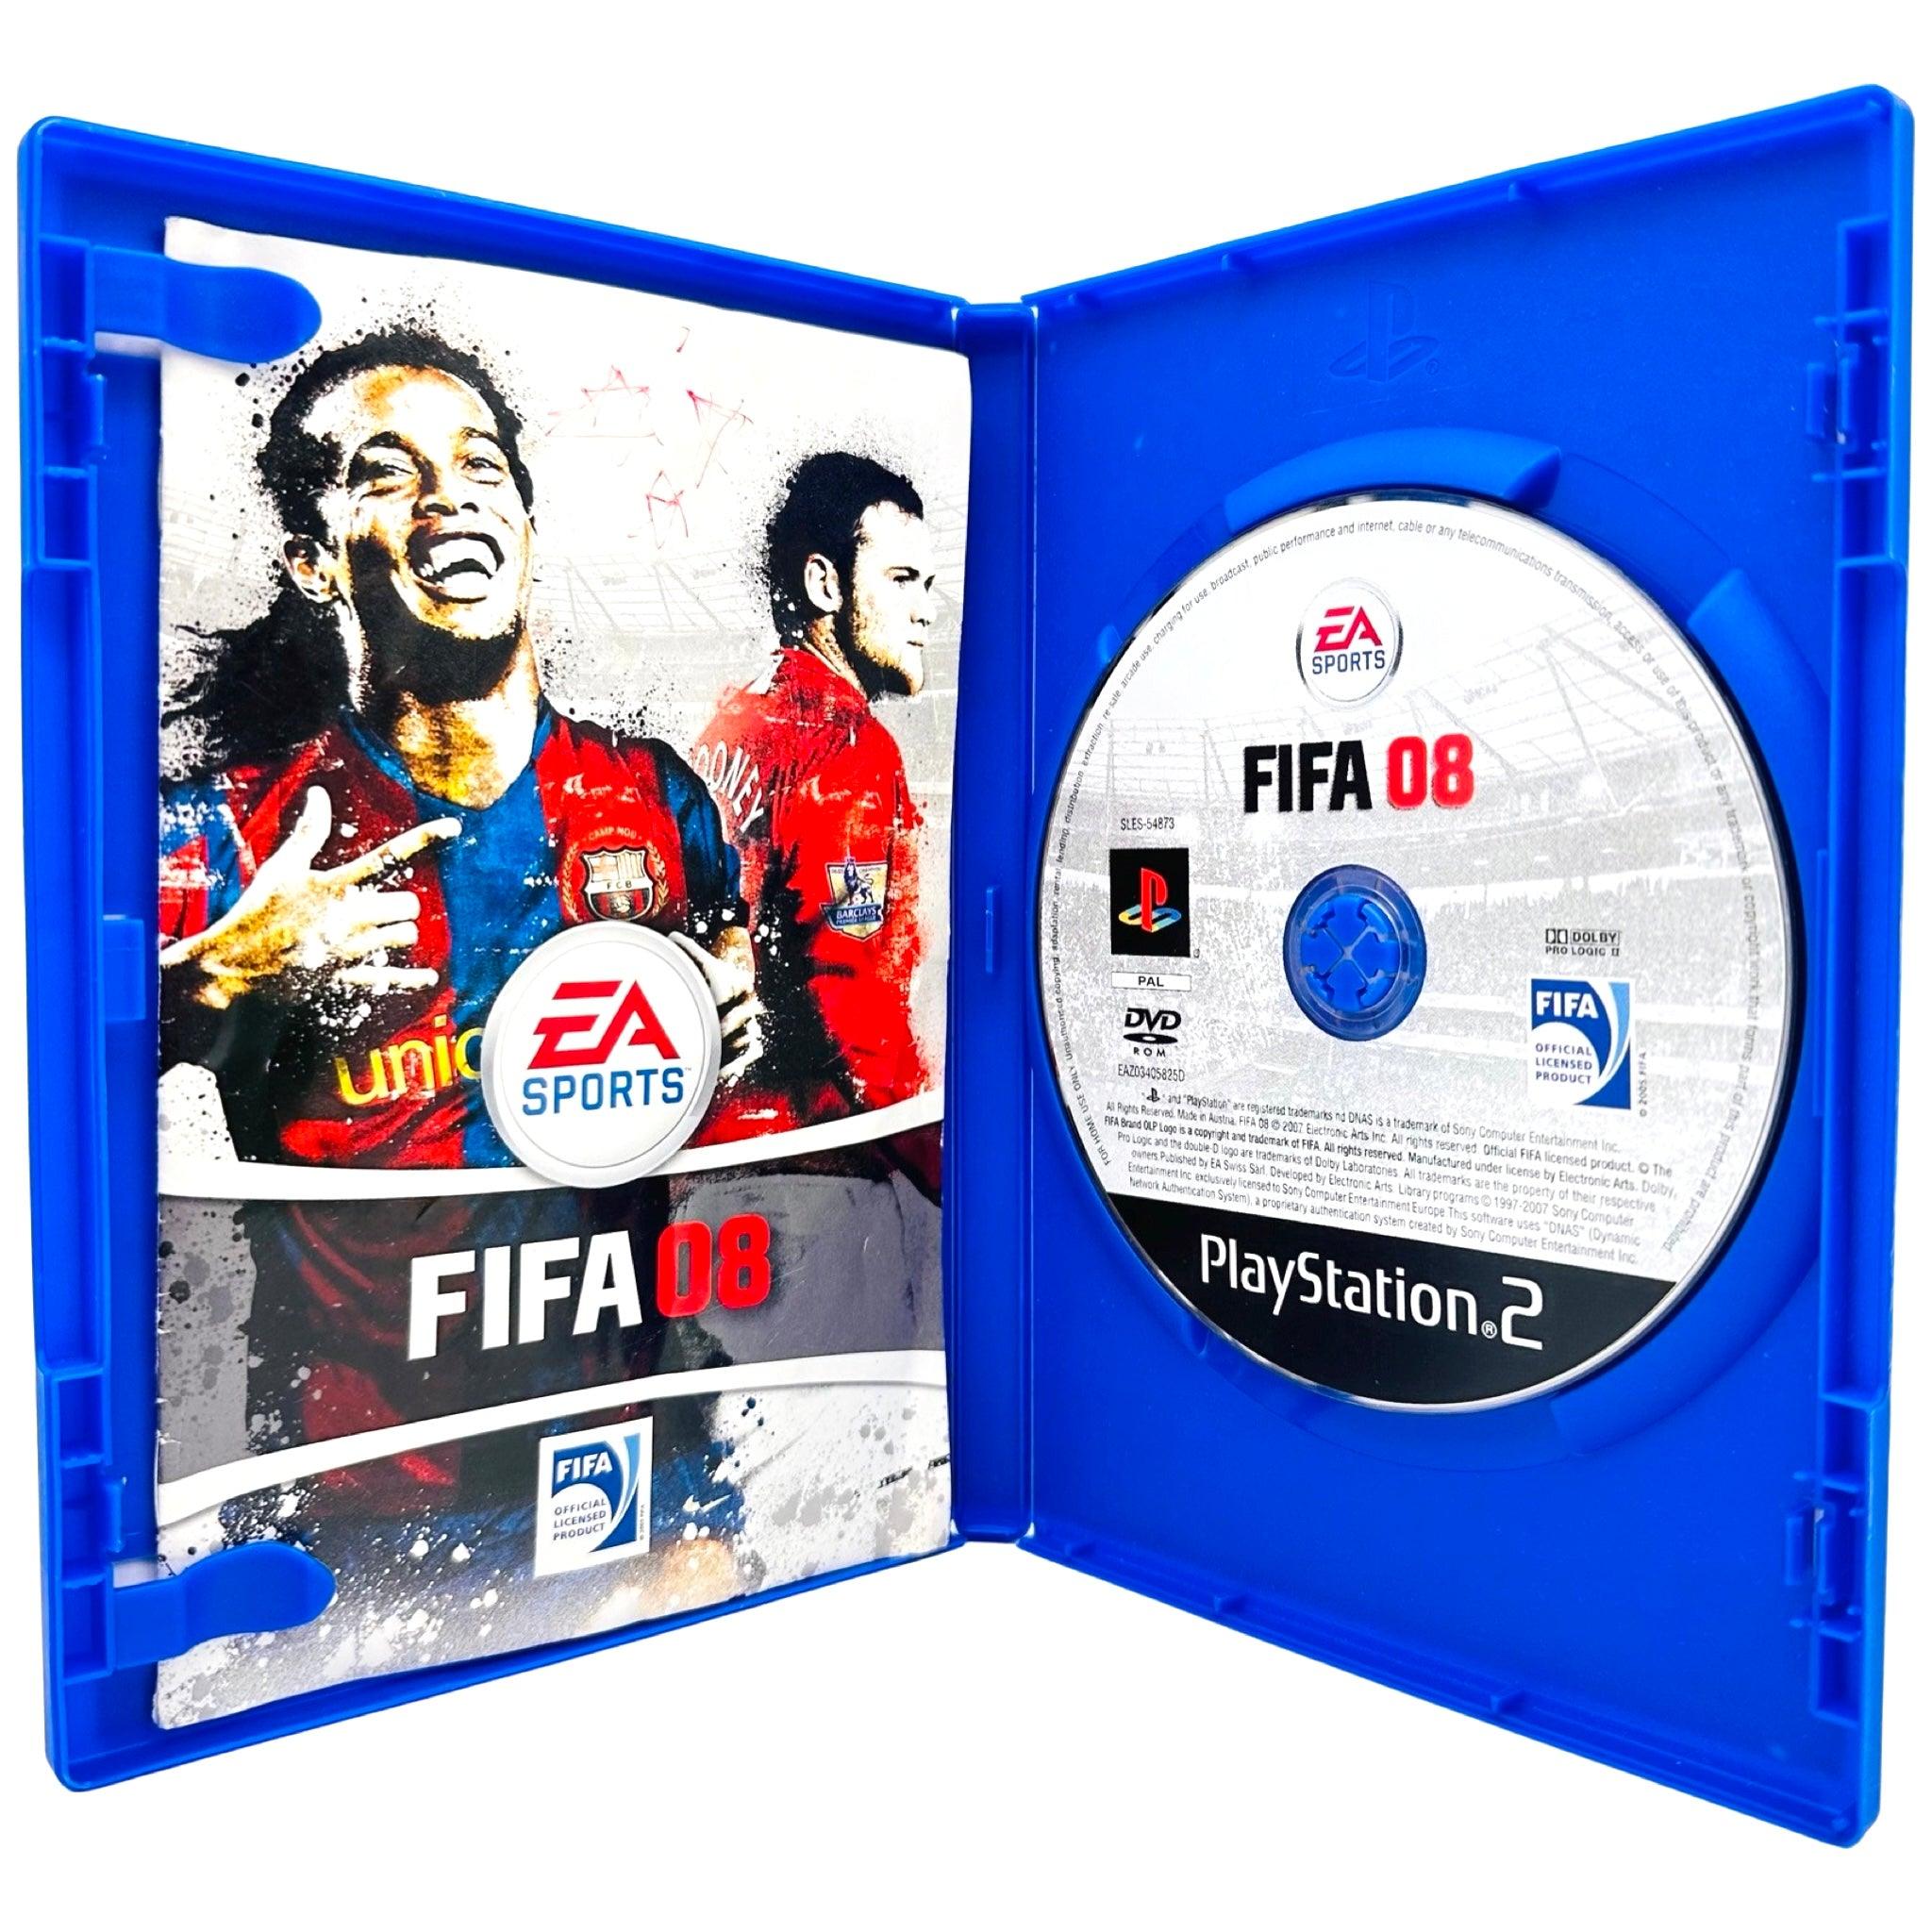 PS2: FIFA 08 - RetroGaming.no